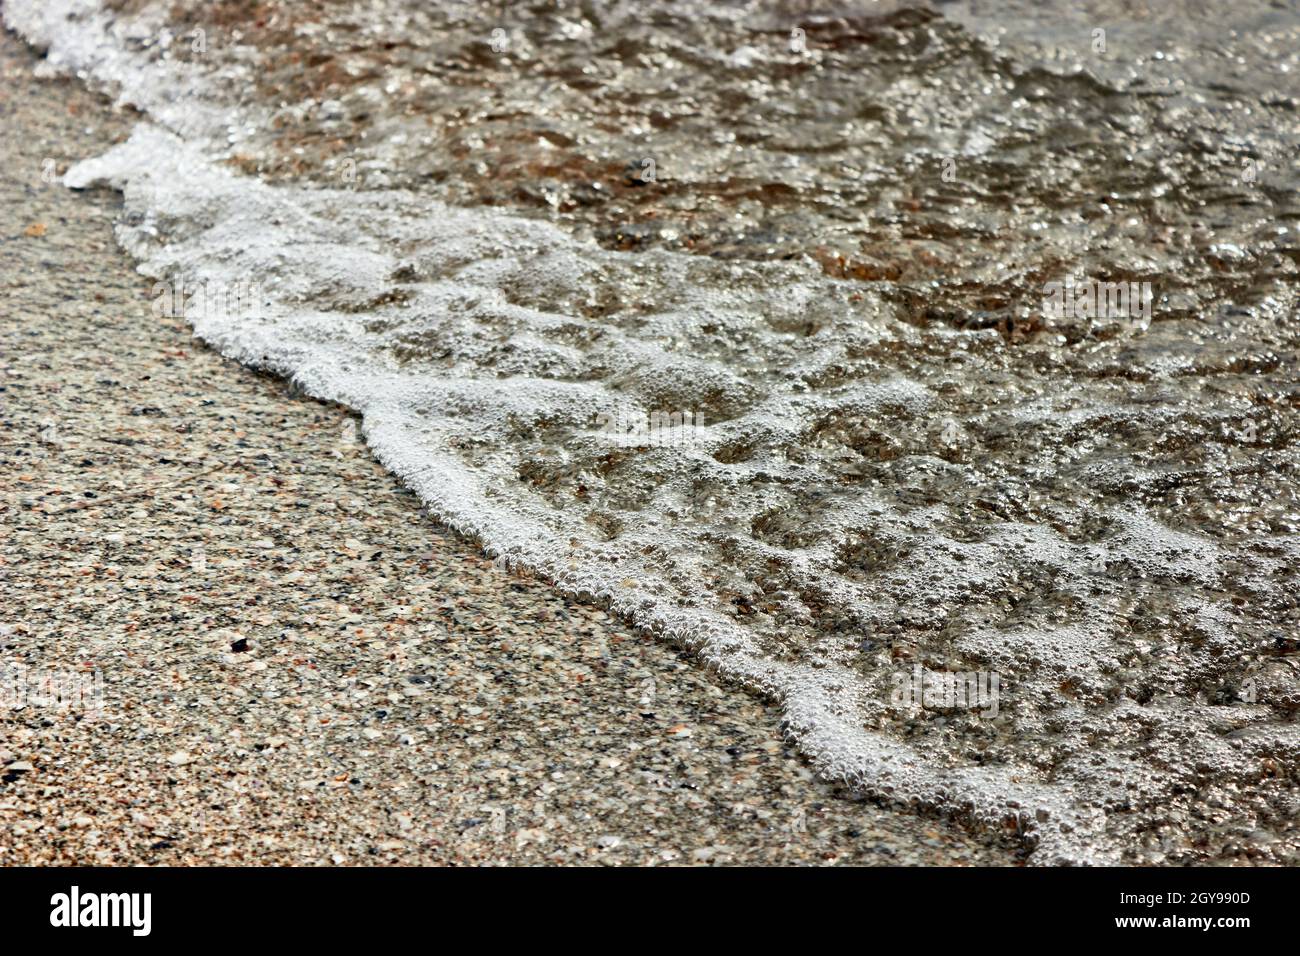 Mousse de mer sur sable de plage avec eau claire.Sable Beach et Sea Foam Macro avec fond étroit.Arrière-plan d'été.Photo horizontale. Banque D'Images